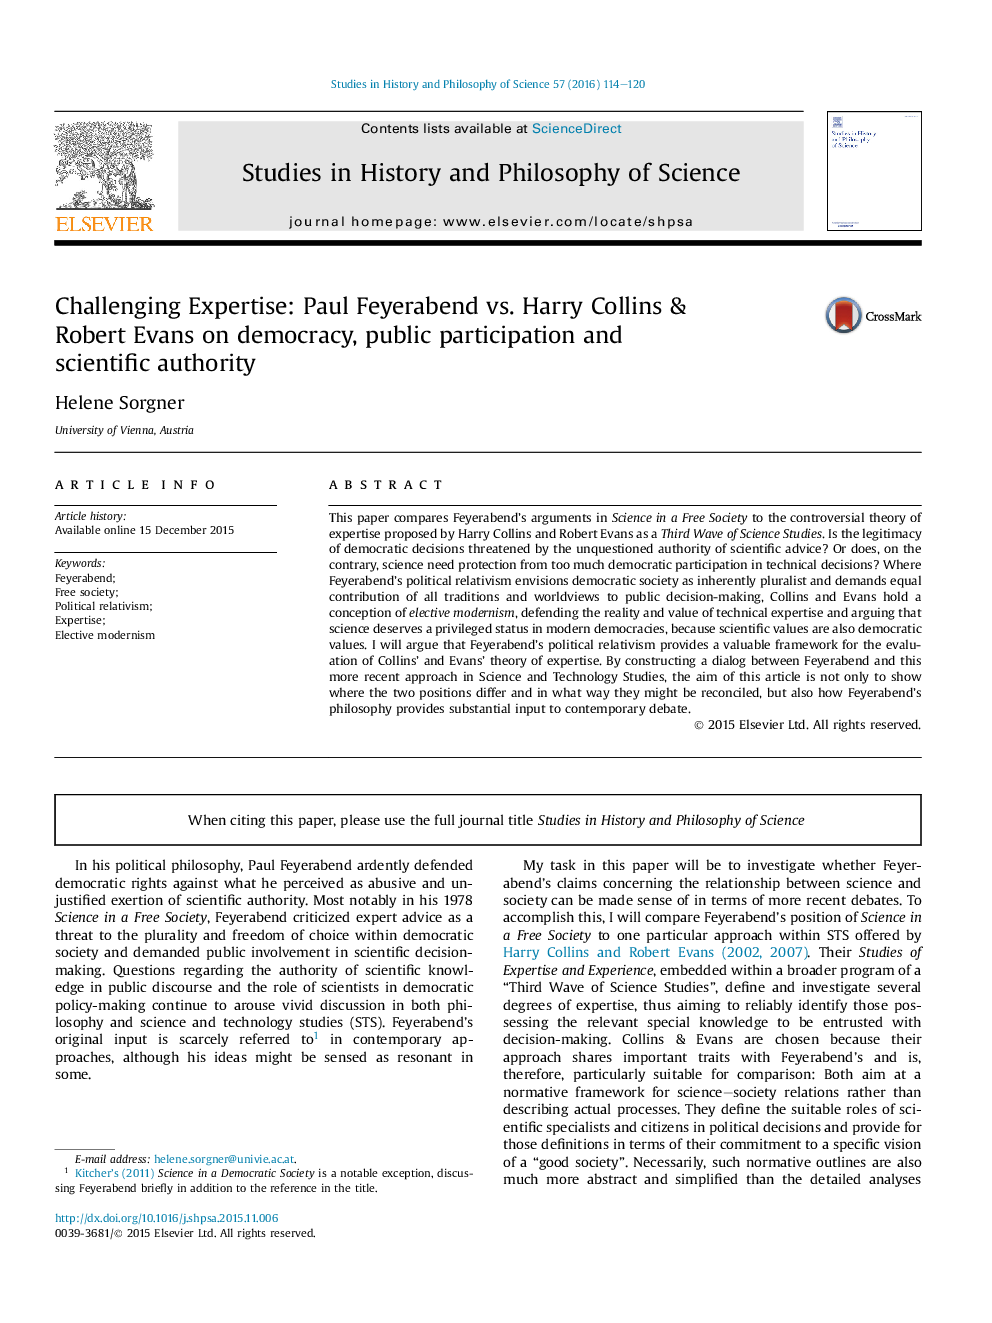 تخصص به چالش کشیدن: پل فایرابند در مقابل هری کالینز و رابرت ایوانز در دموکراسی، مشارکت عمومی و قدرت علمی: پل فایرابند در مقابل هری کالینز و رابرت ایوانز در مقام علمی و مشارکت عمومی